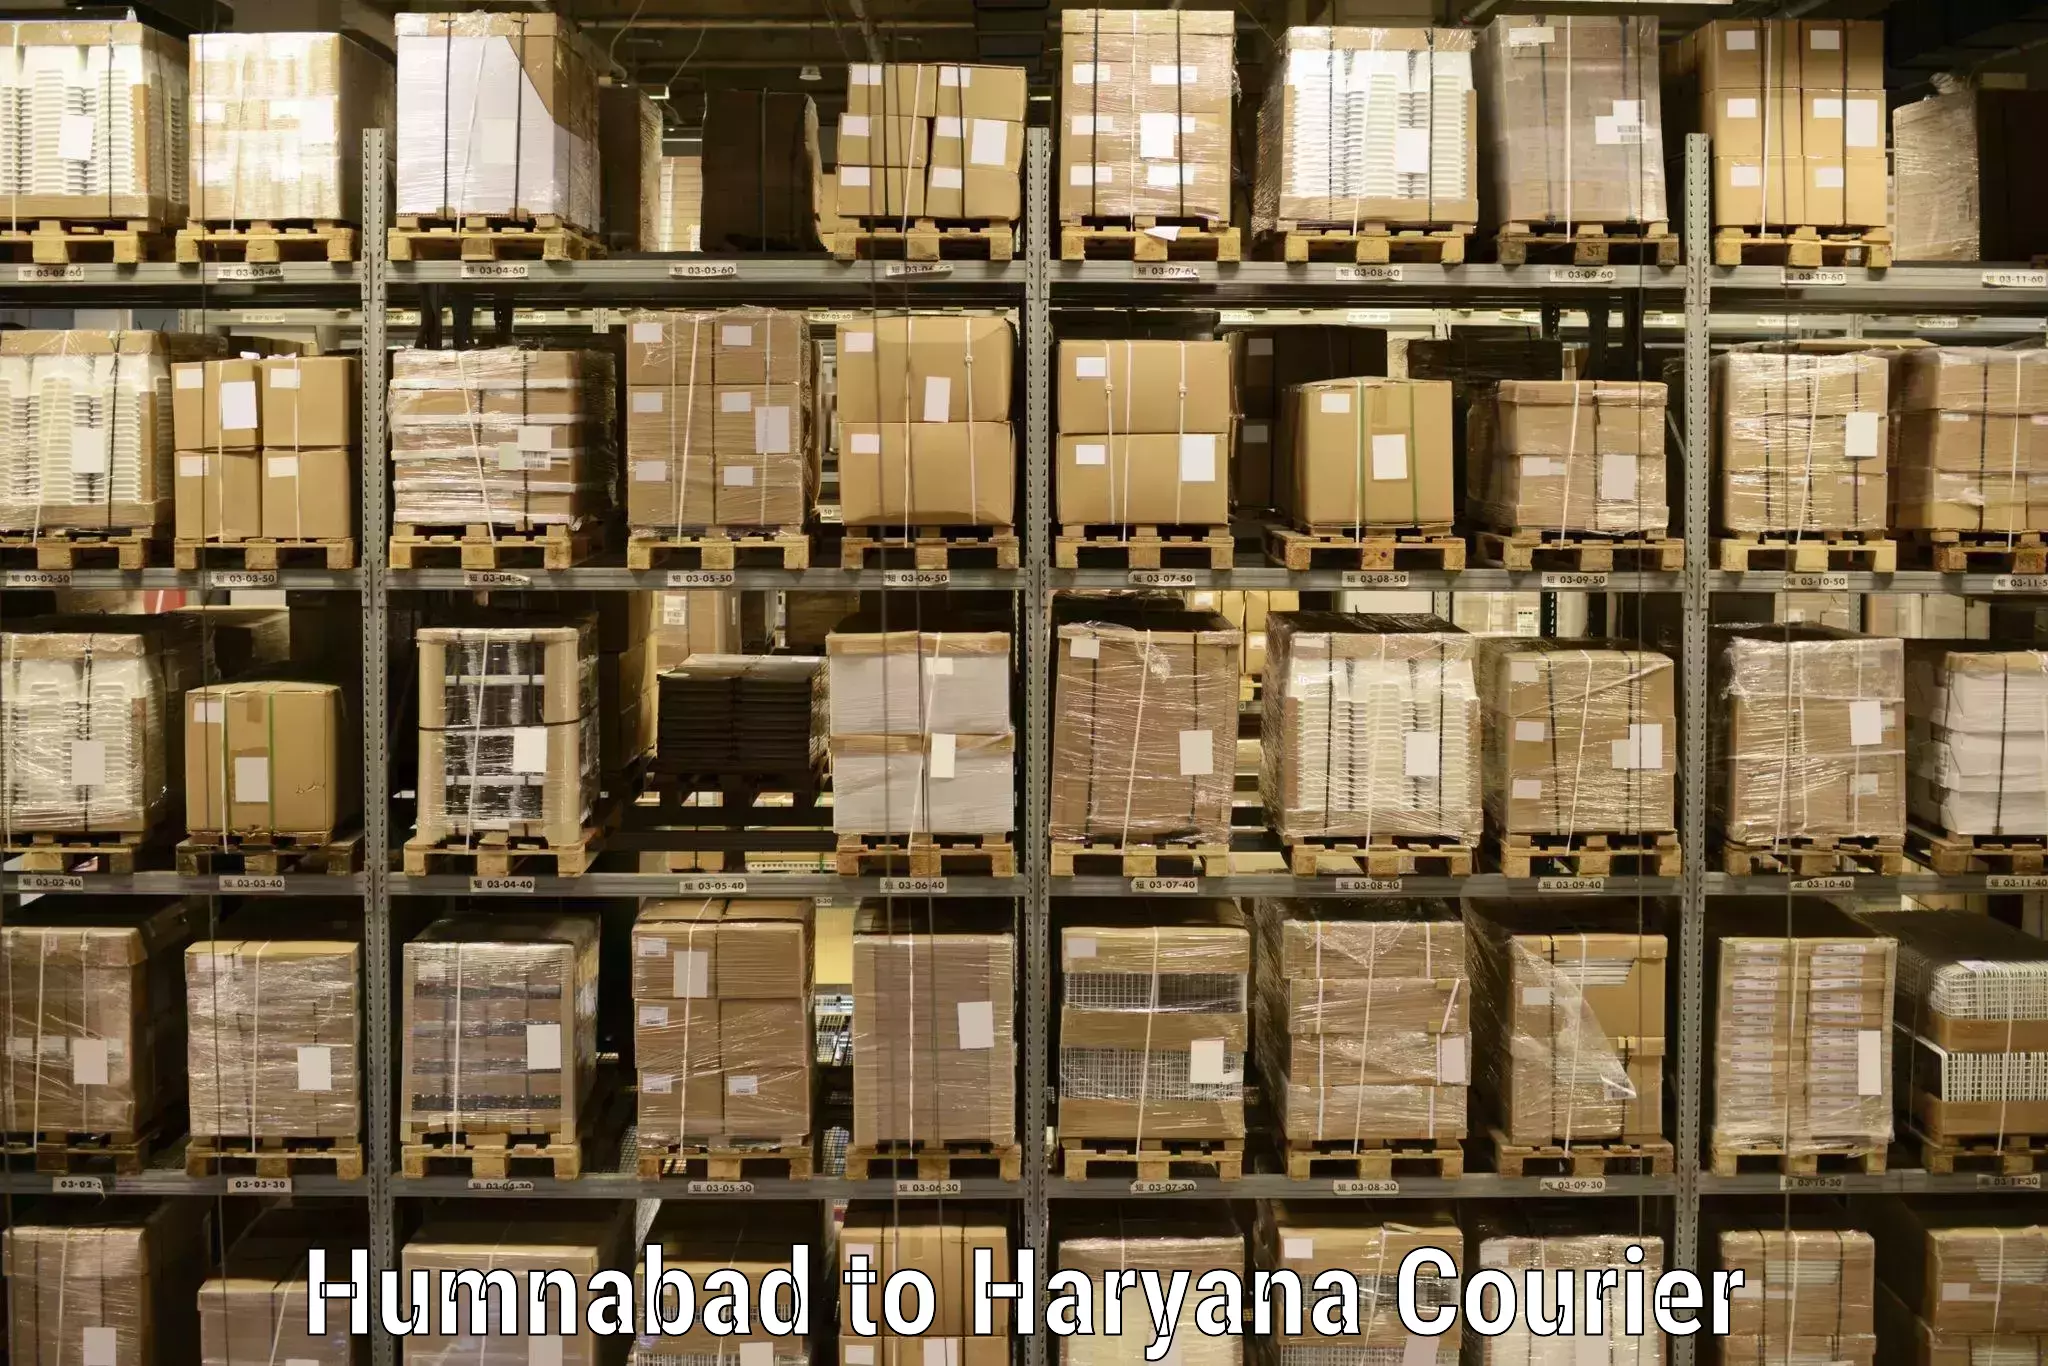 Global shipping networks Humnabad to Julana